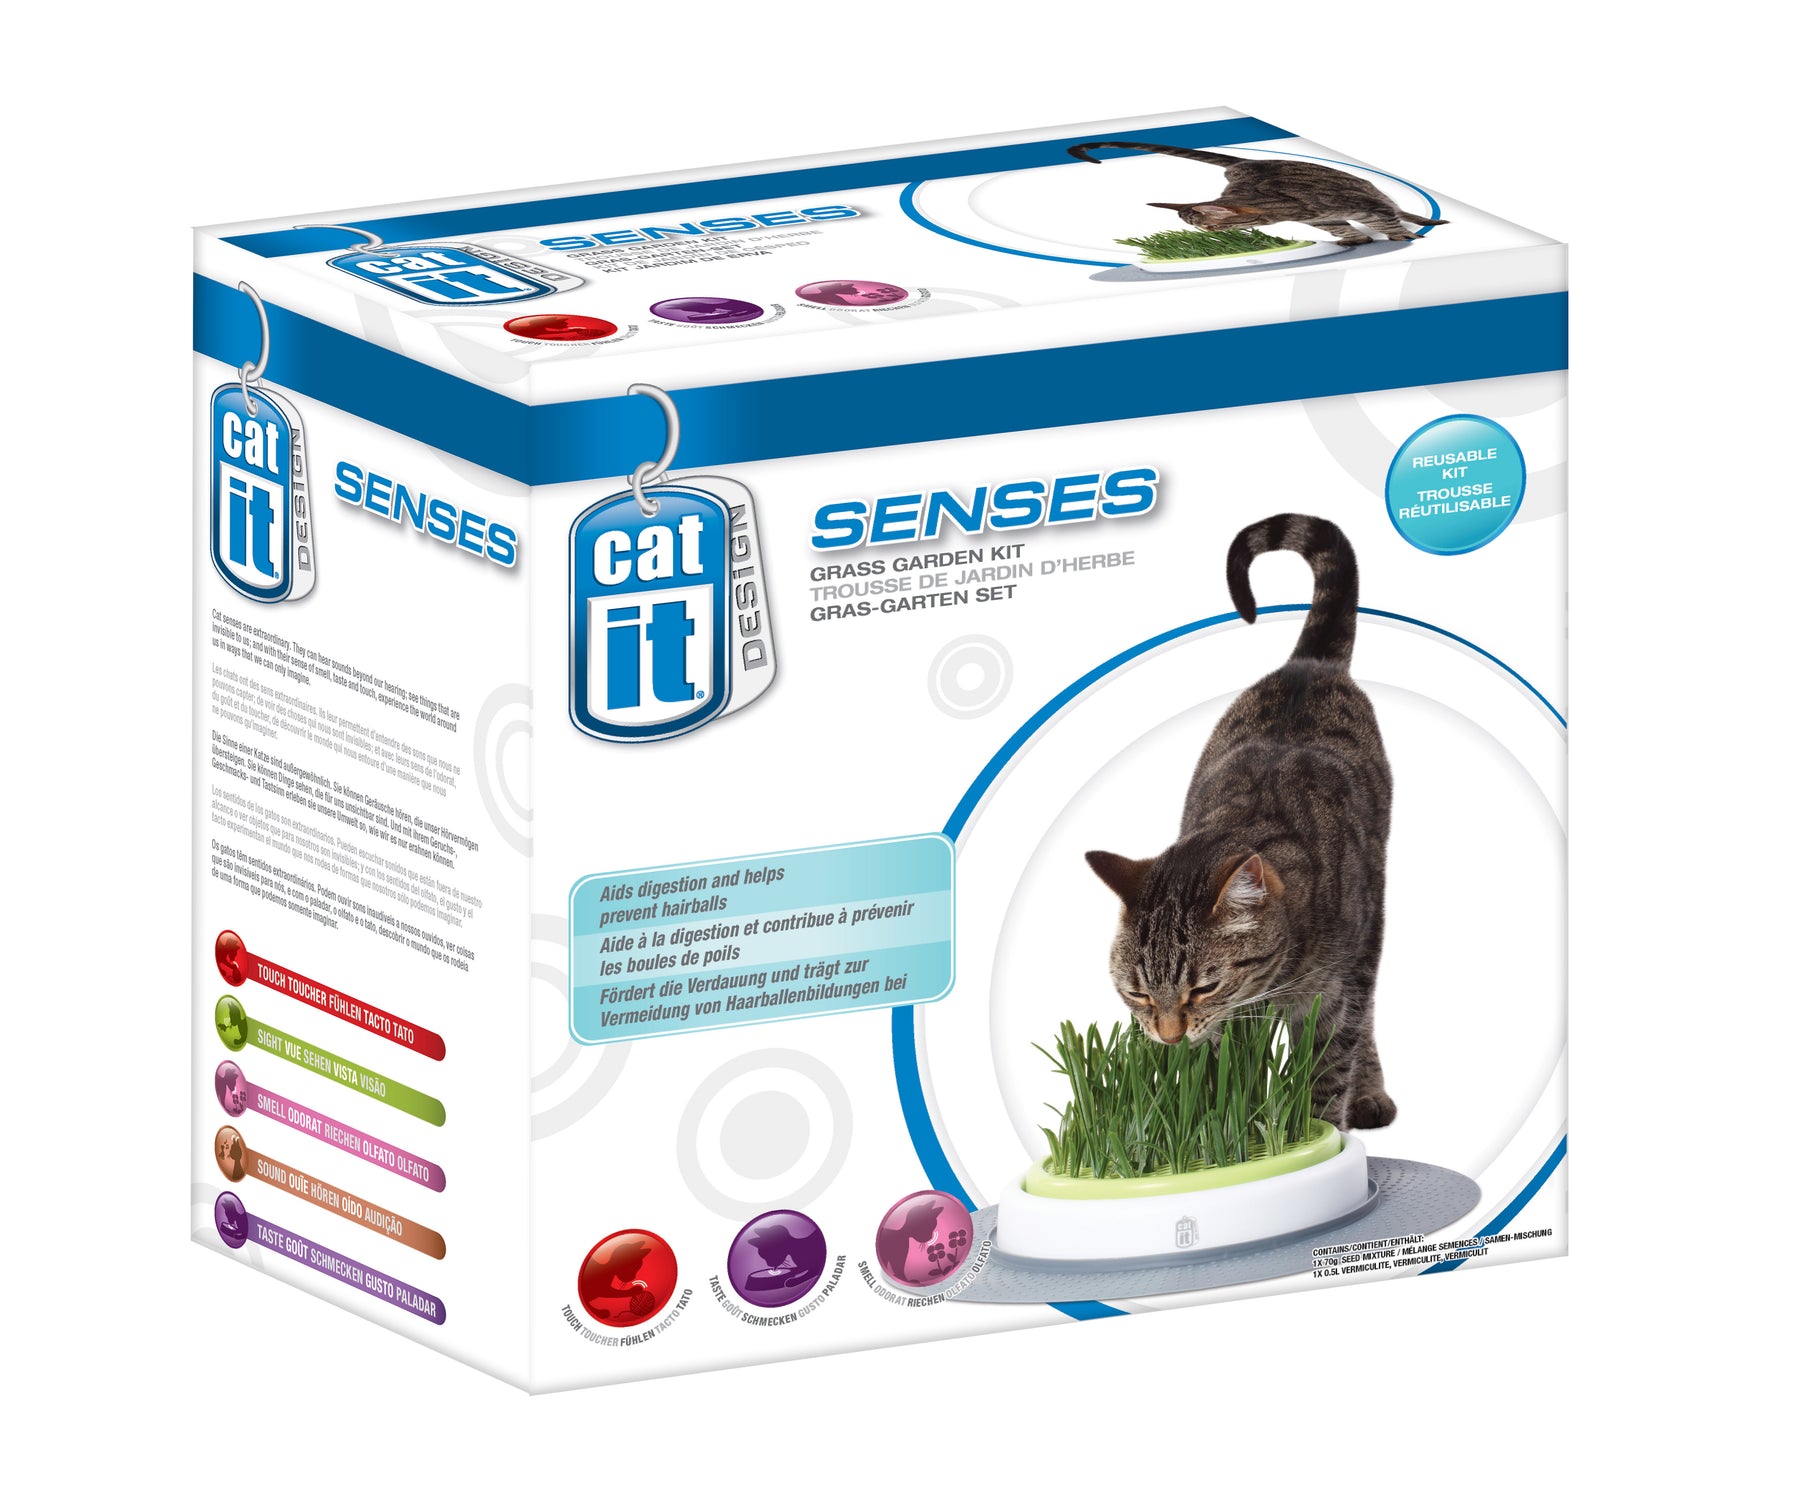 Senses 2.0 Grass Planter